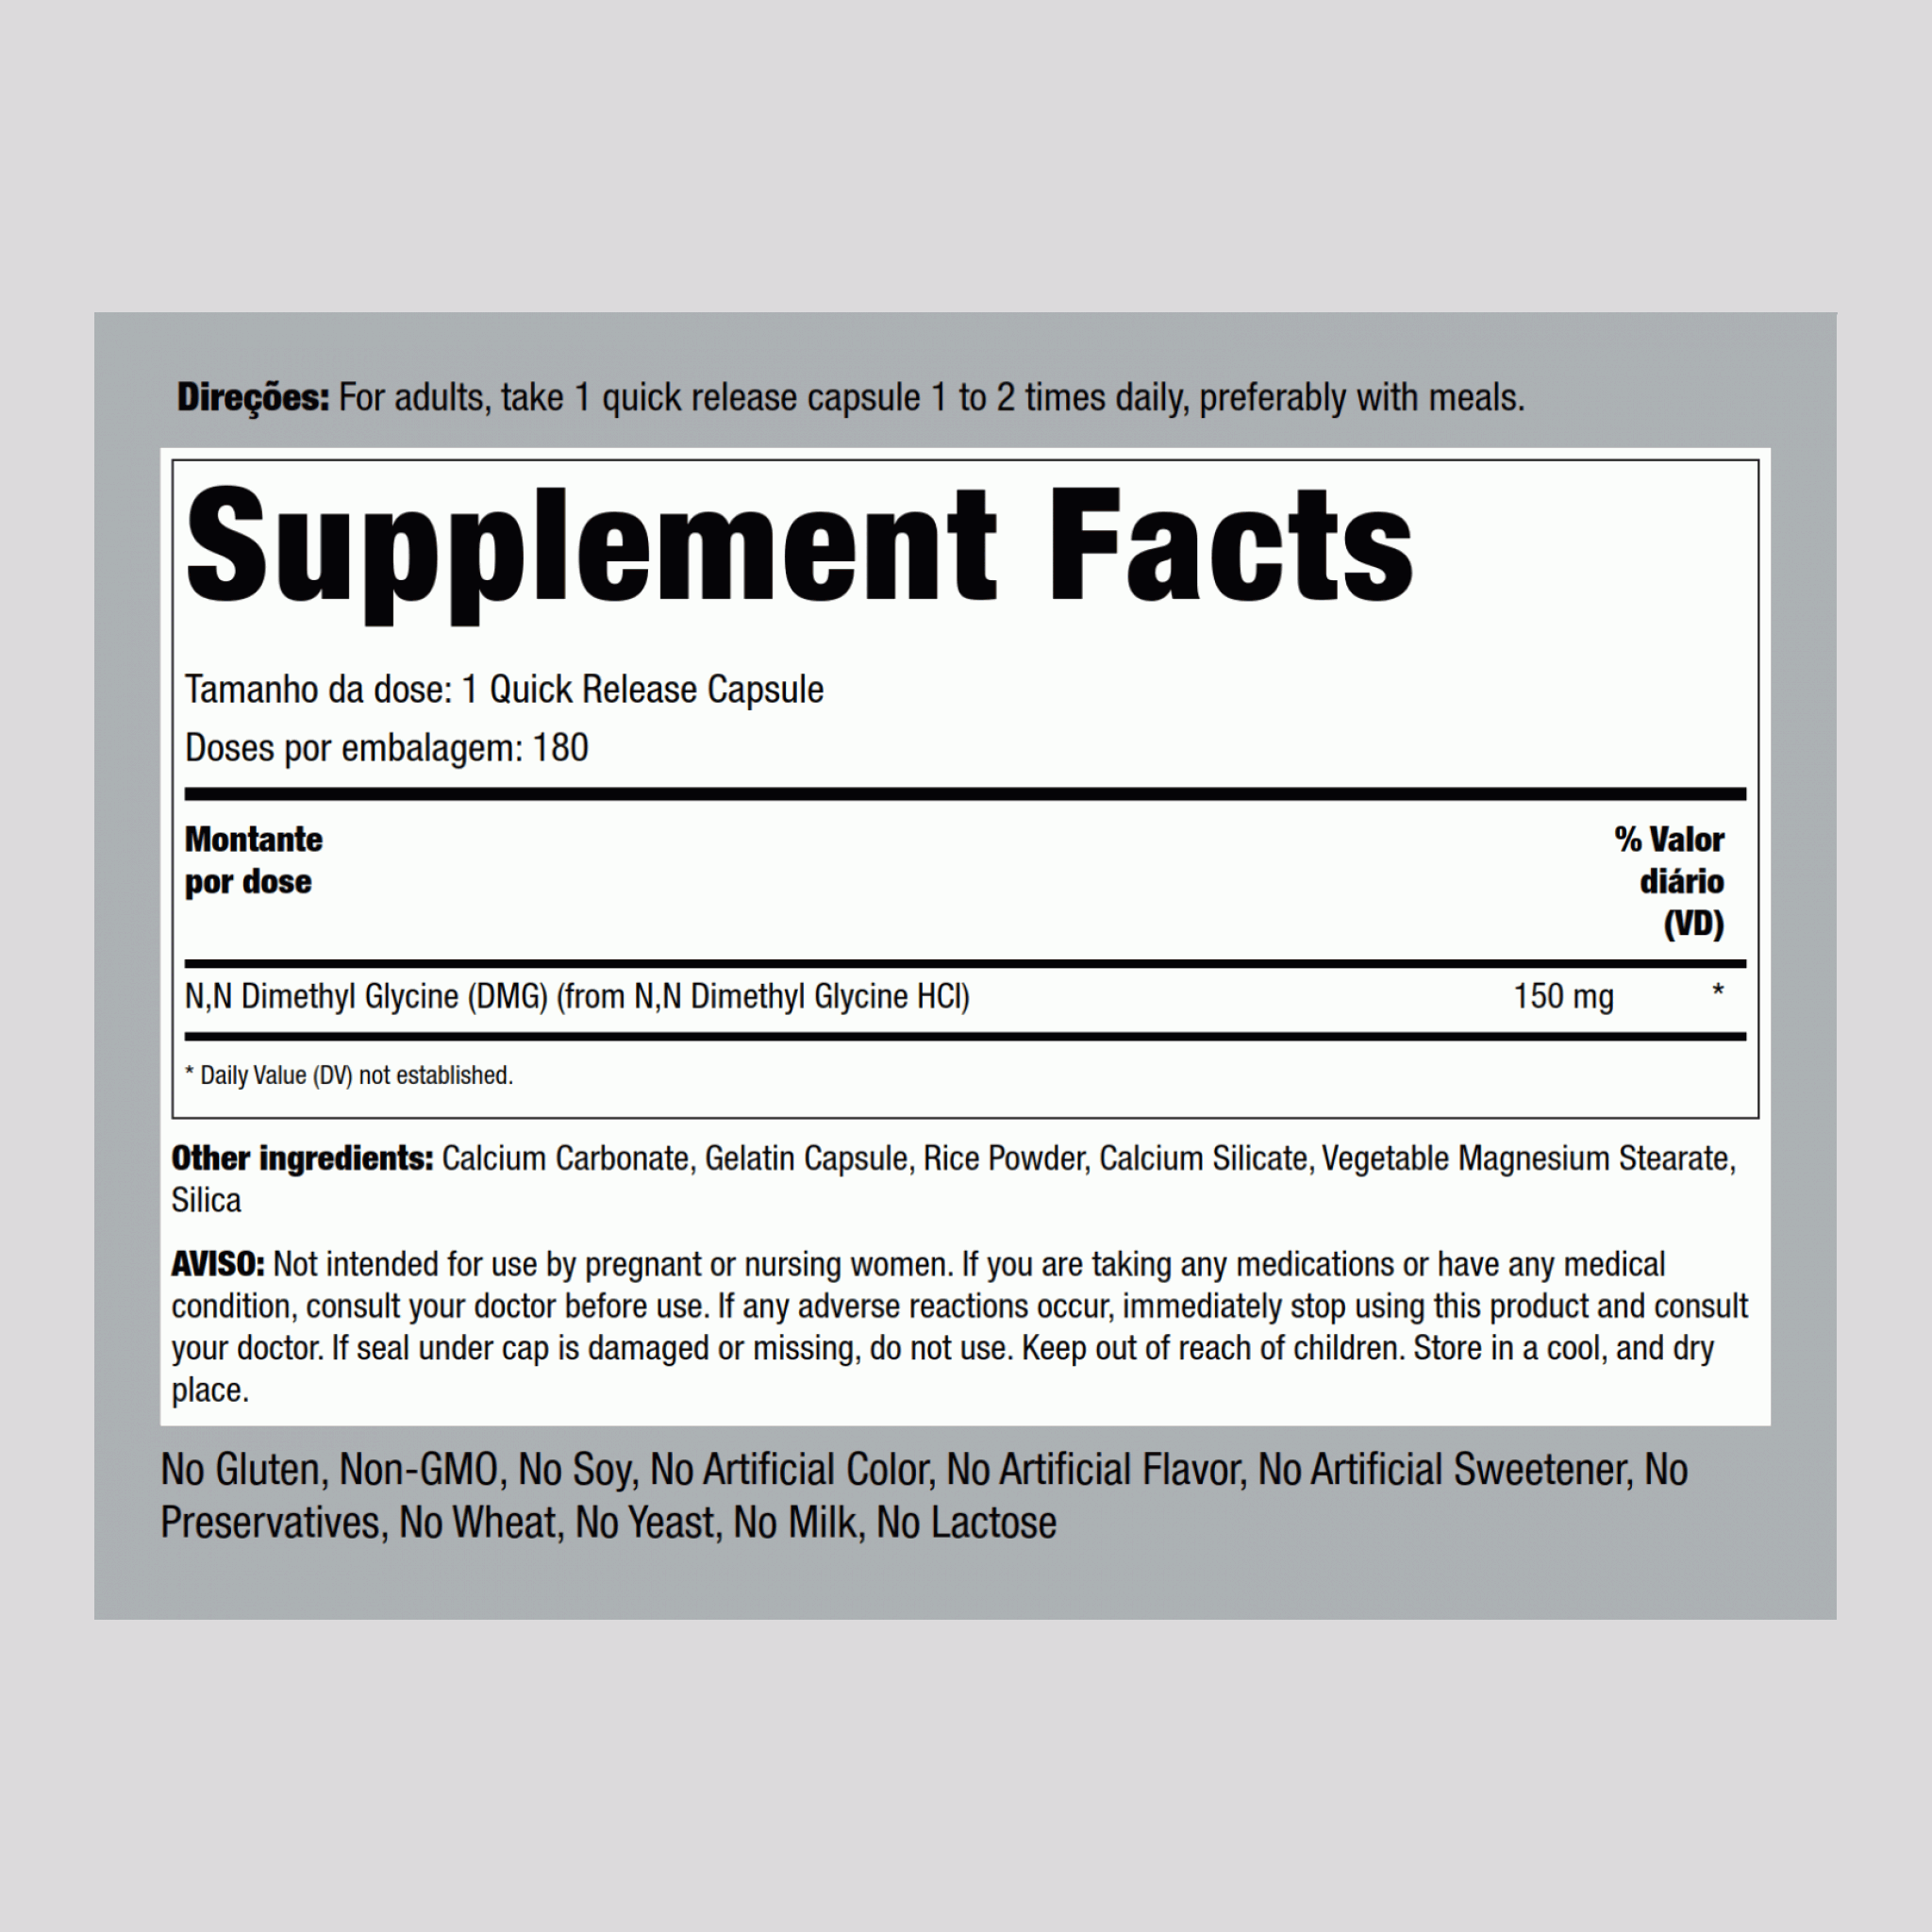 Pangamato de cálcio (B15) (DMG) 150 mg 180 Comprimidos vegetarianos     